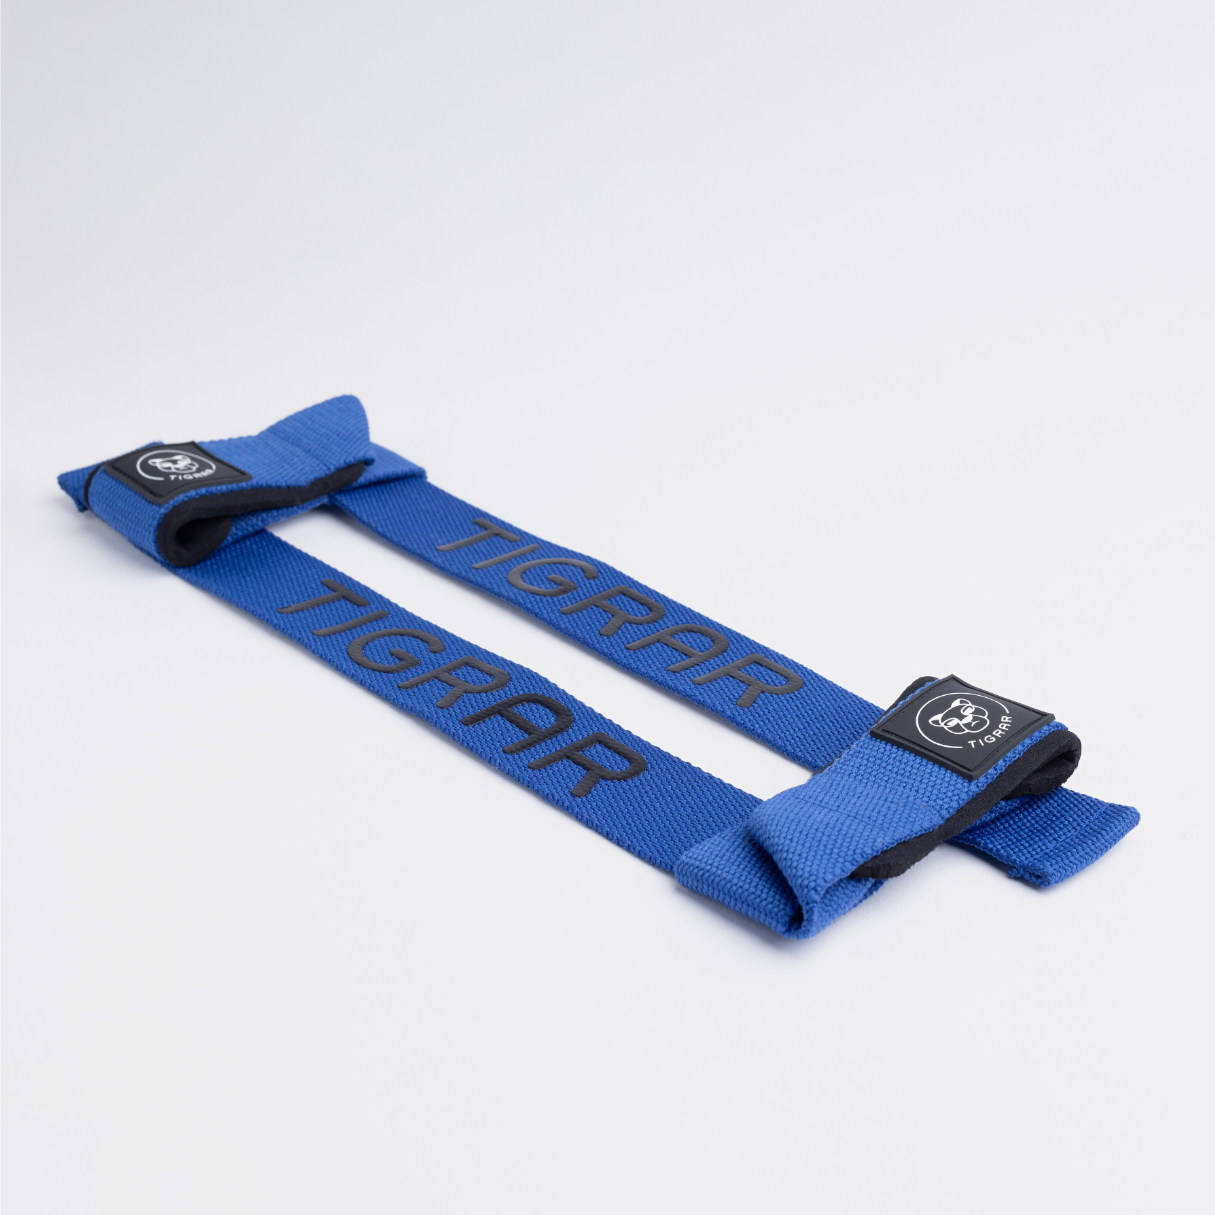 Gedetailleerde weergave van blauwe Tigrar's lifting straps, benadrukt slijtvaste materialen en comfortabele padding.